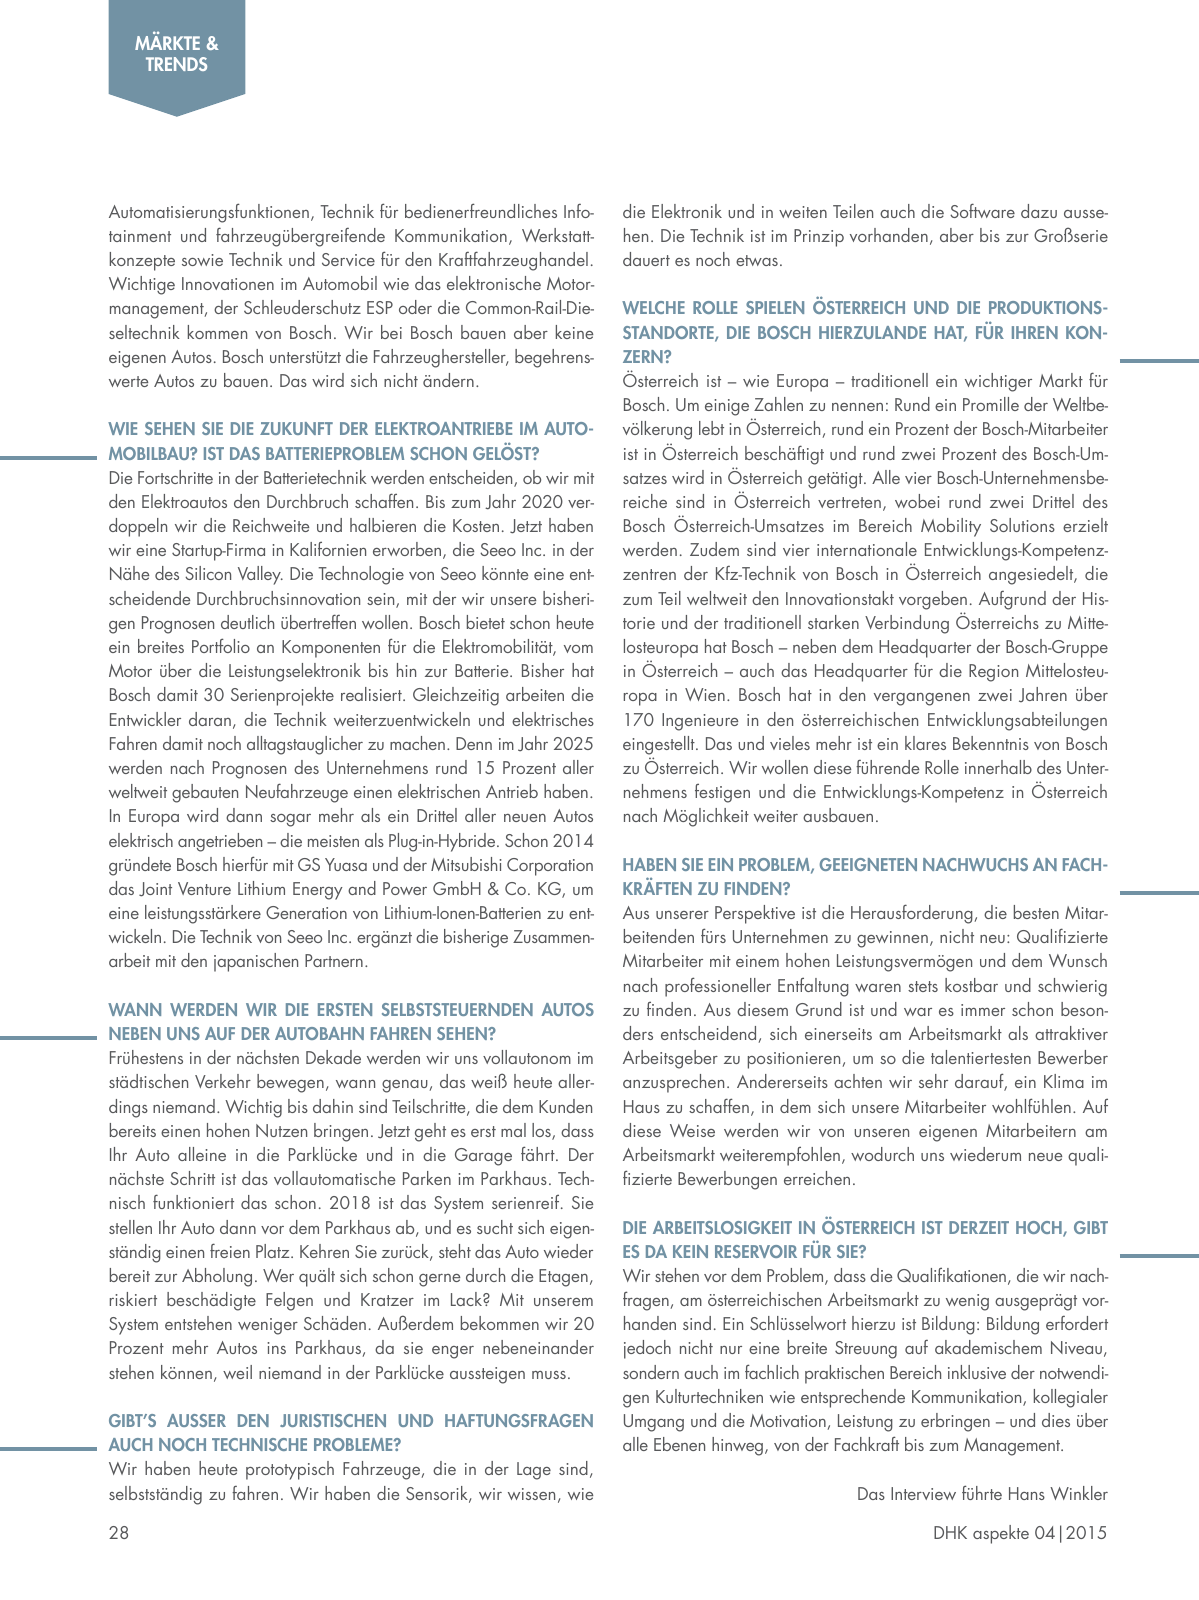 Vorschau Aspekte 04/2015 Seite 28